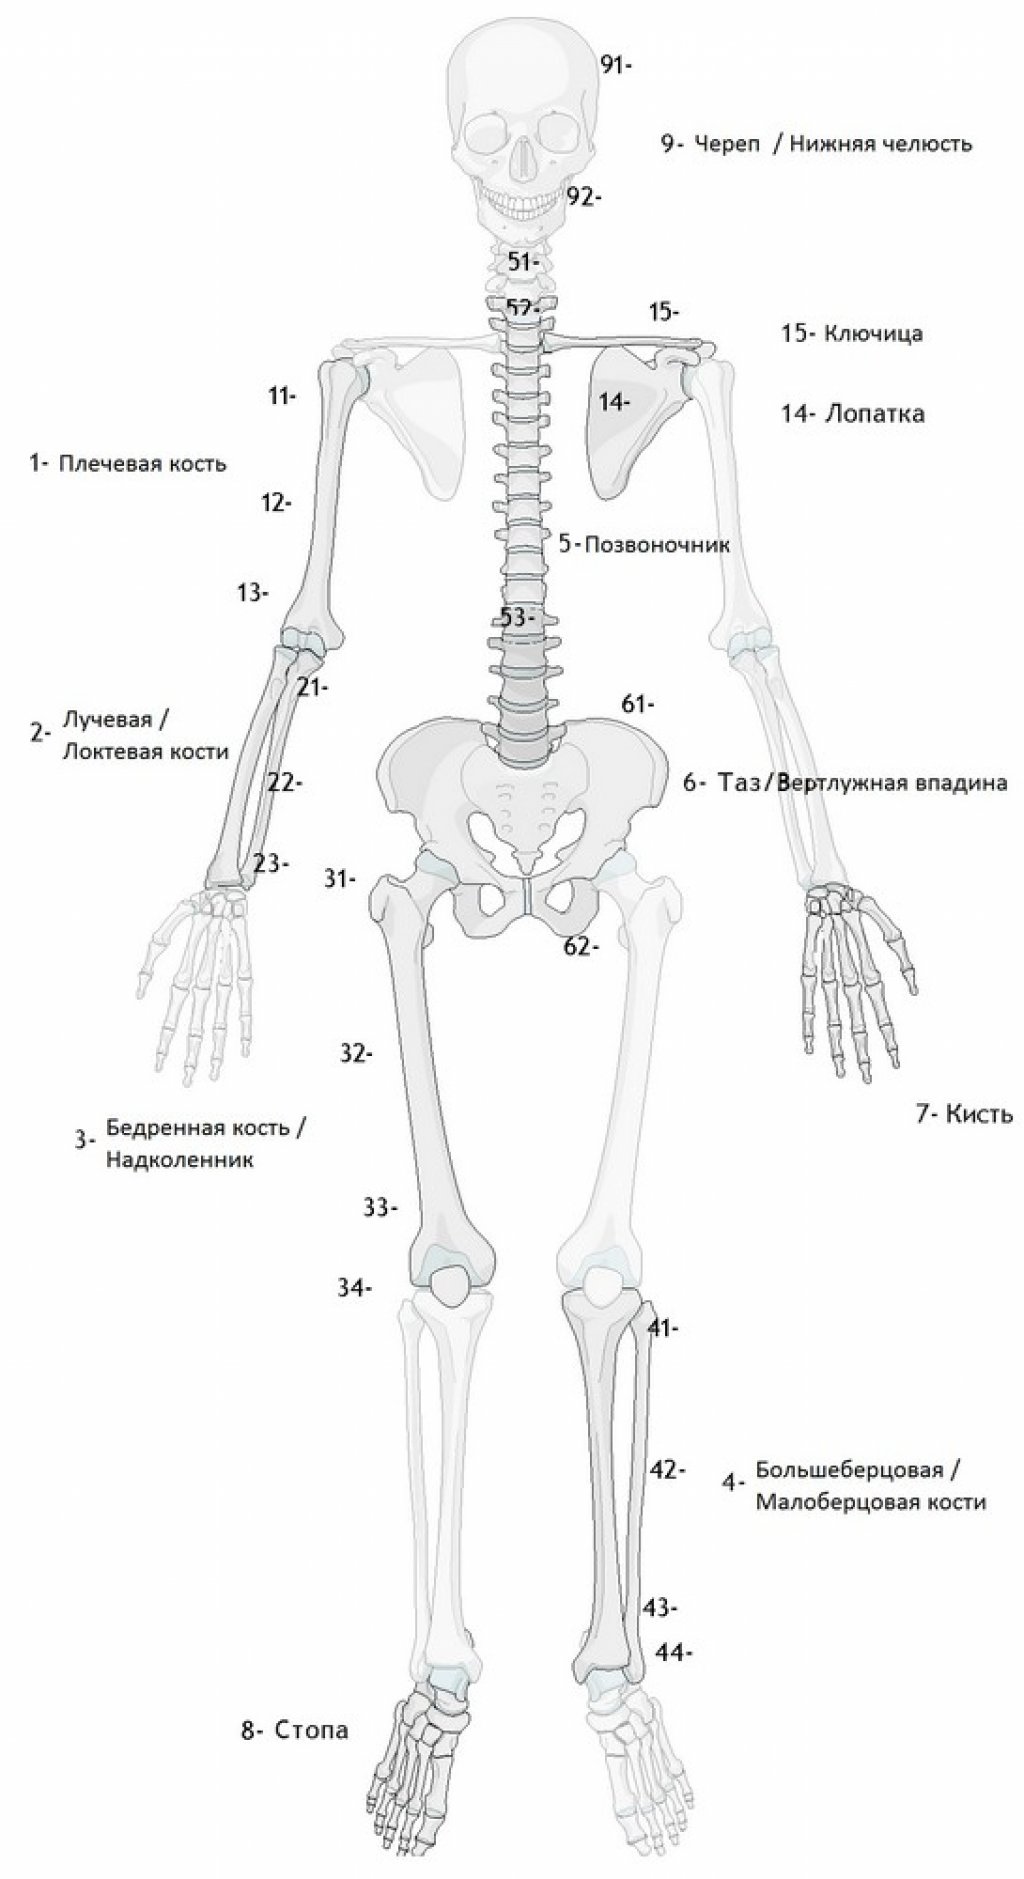 Классификация переломов трубчатых костей Мюллера АО (Ассоциации Осетосинтеза)